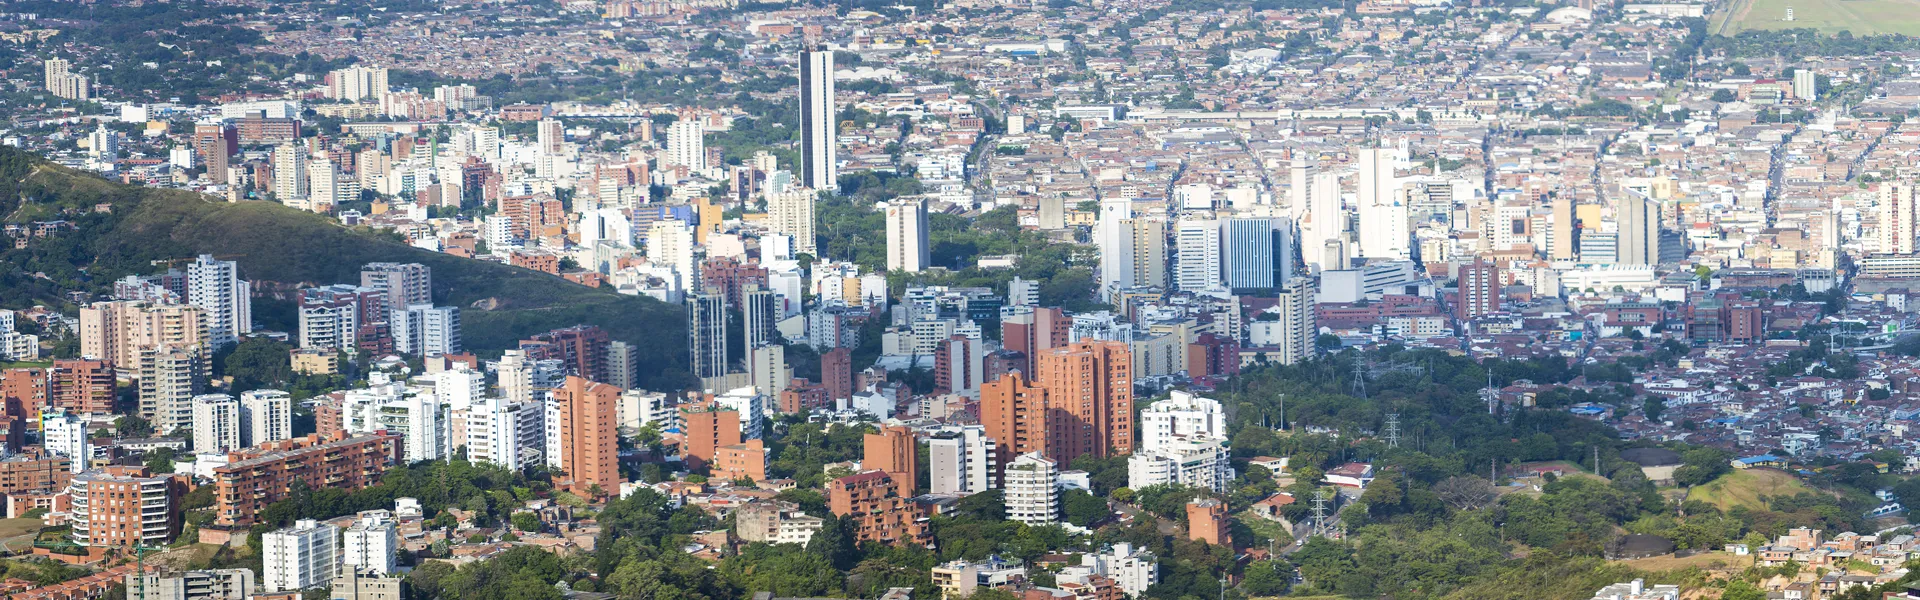 IMAE confirma la desaceleración esperada en el ritmo de crecimiento del Distrito de Santiago de Cali